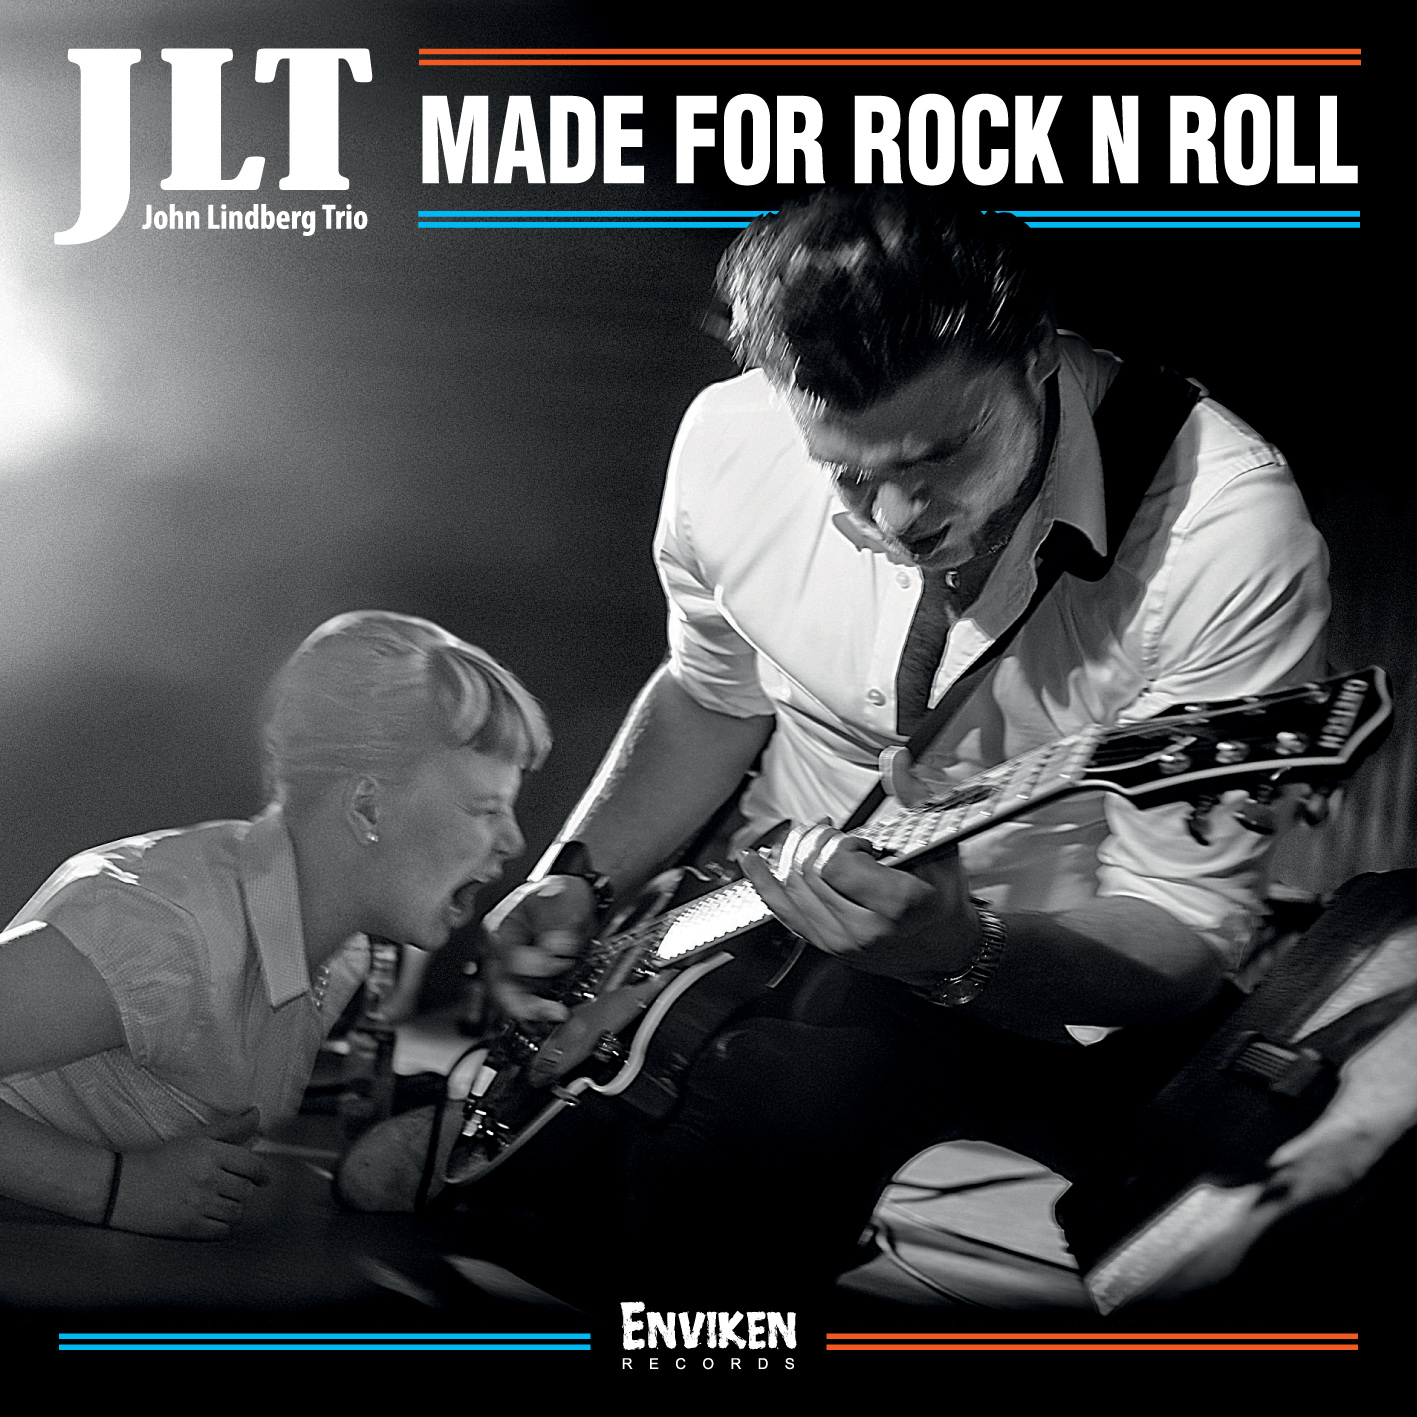 JLT (John Lindberg Trio) - Made For Rock n Roll - CD